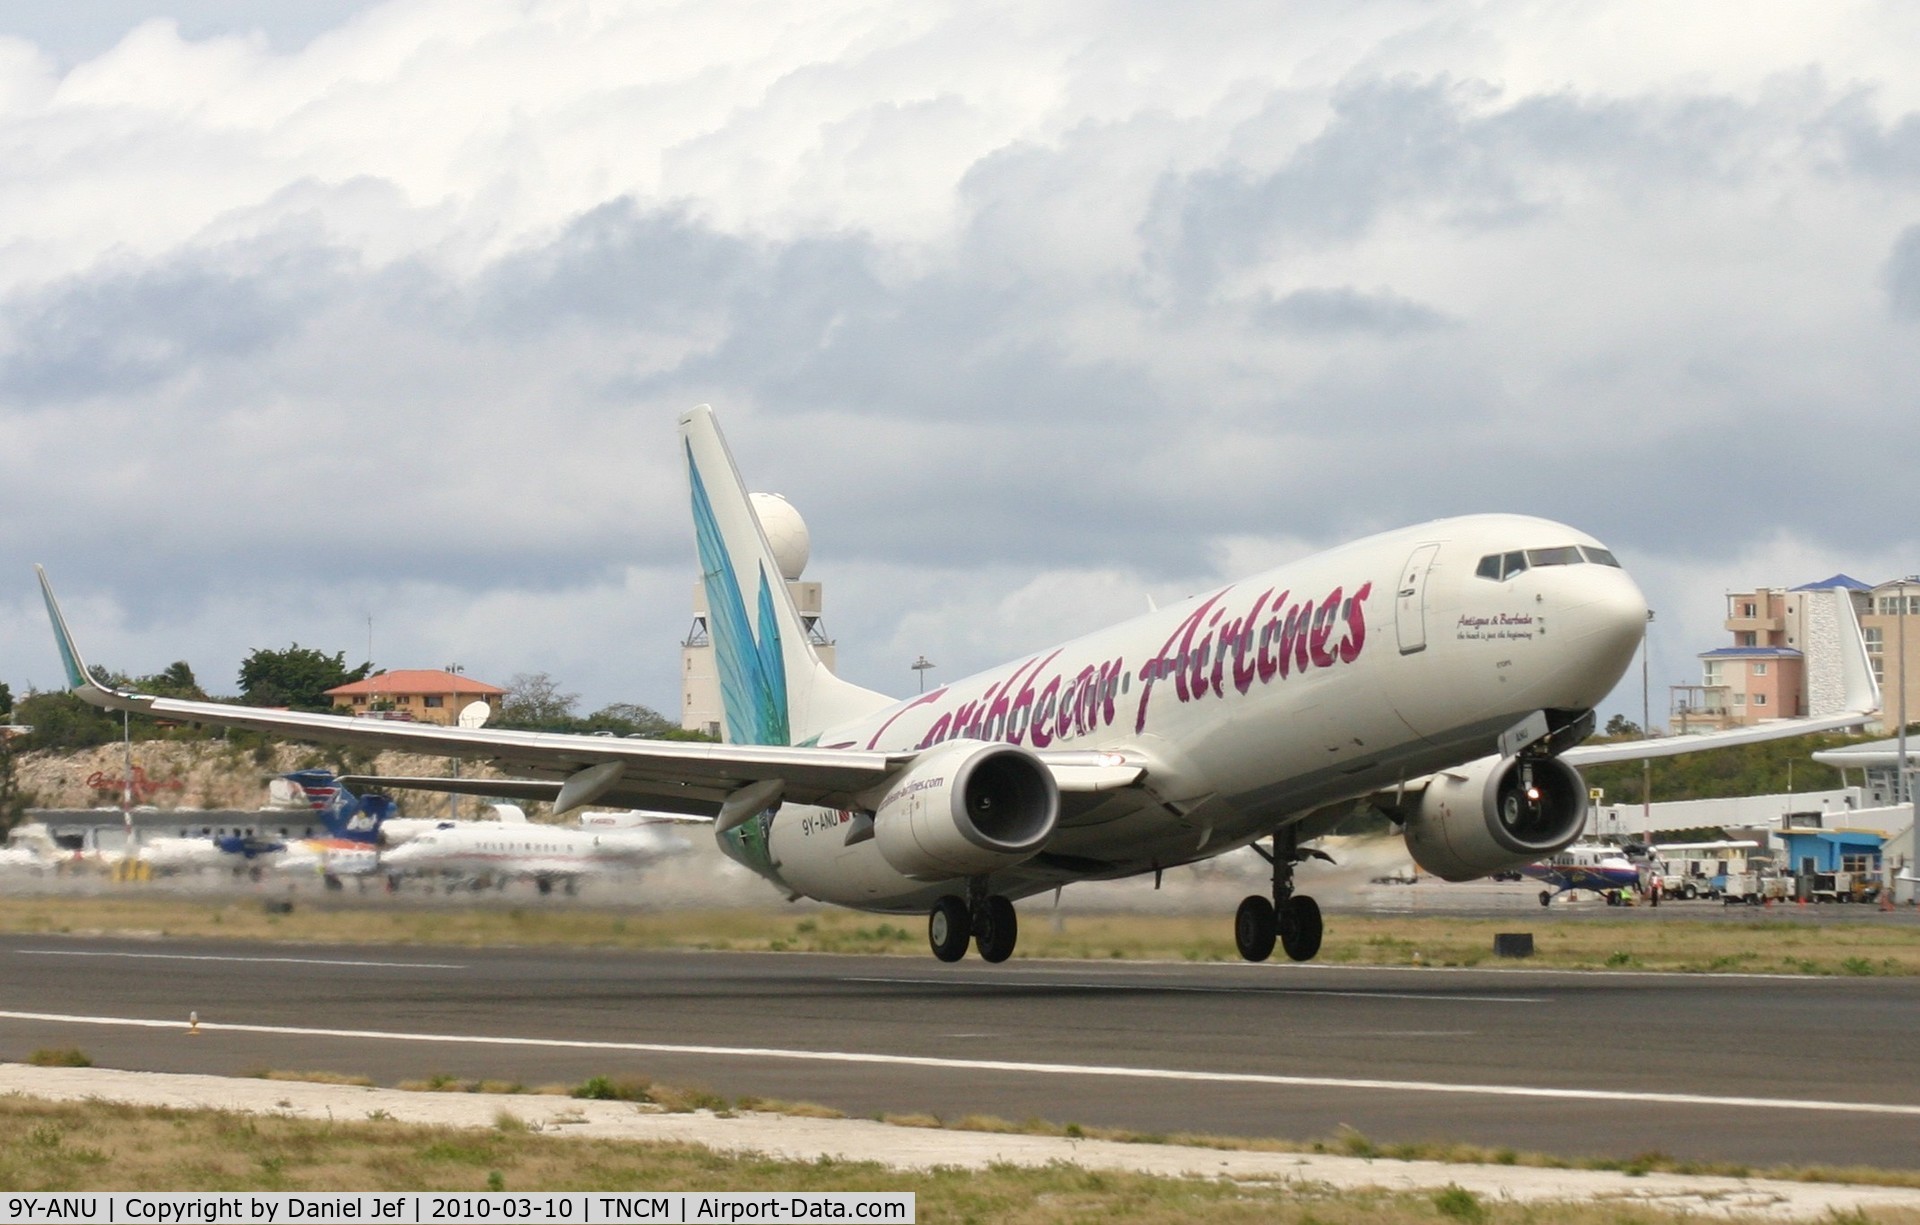 9Y-ANU, 2000 Boeing 737-8Q8 C/N 28235, Caribbean airlines 9Y-ANU departing TNCM runway 10